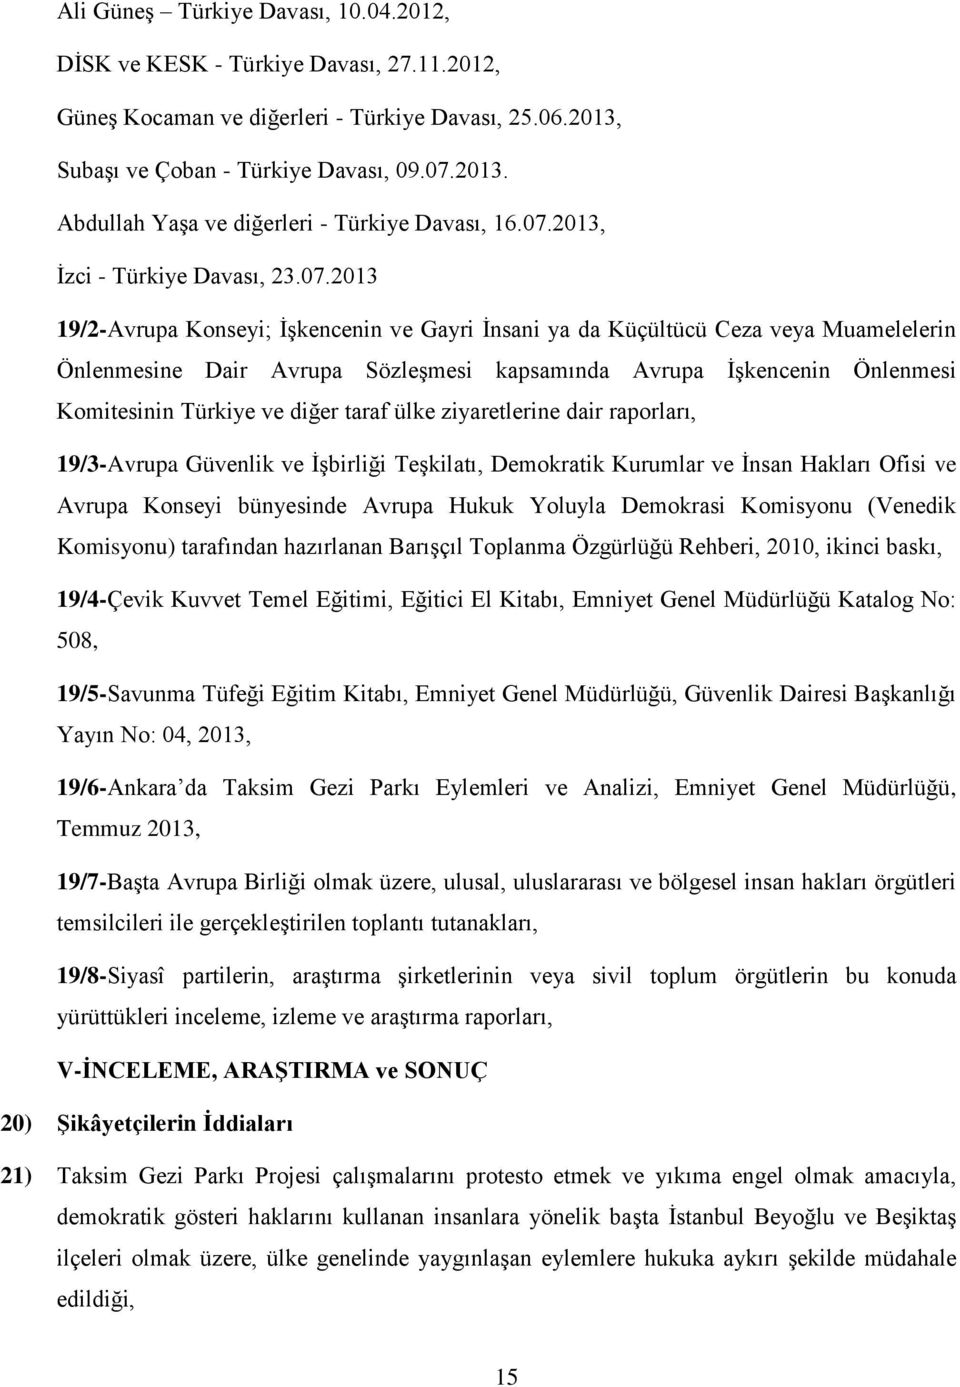 Önlenmesi Komitesinin Türkiye ve diğer taraf ülke ziyaretlerine dair raporları, 19/3-Avrupa Güvenlik ve İşbirliği Teşkilatı, Demokratik Kurumlar ve İnsan Hakları Ofisi ve Avrupa Konseyi bünyesinde